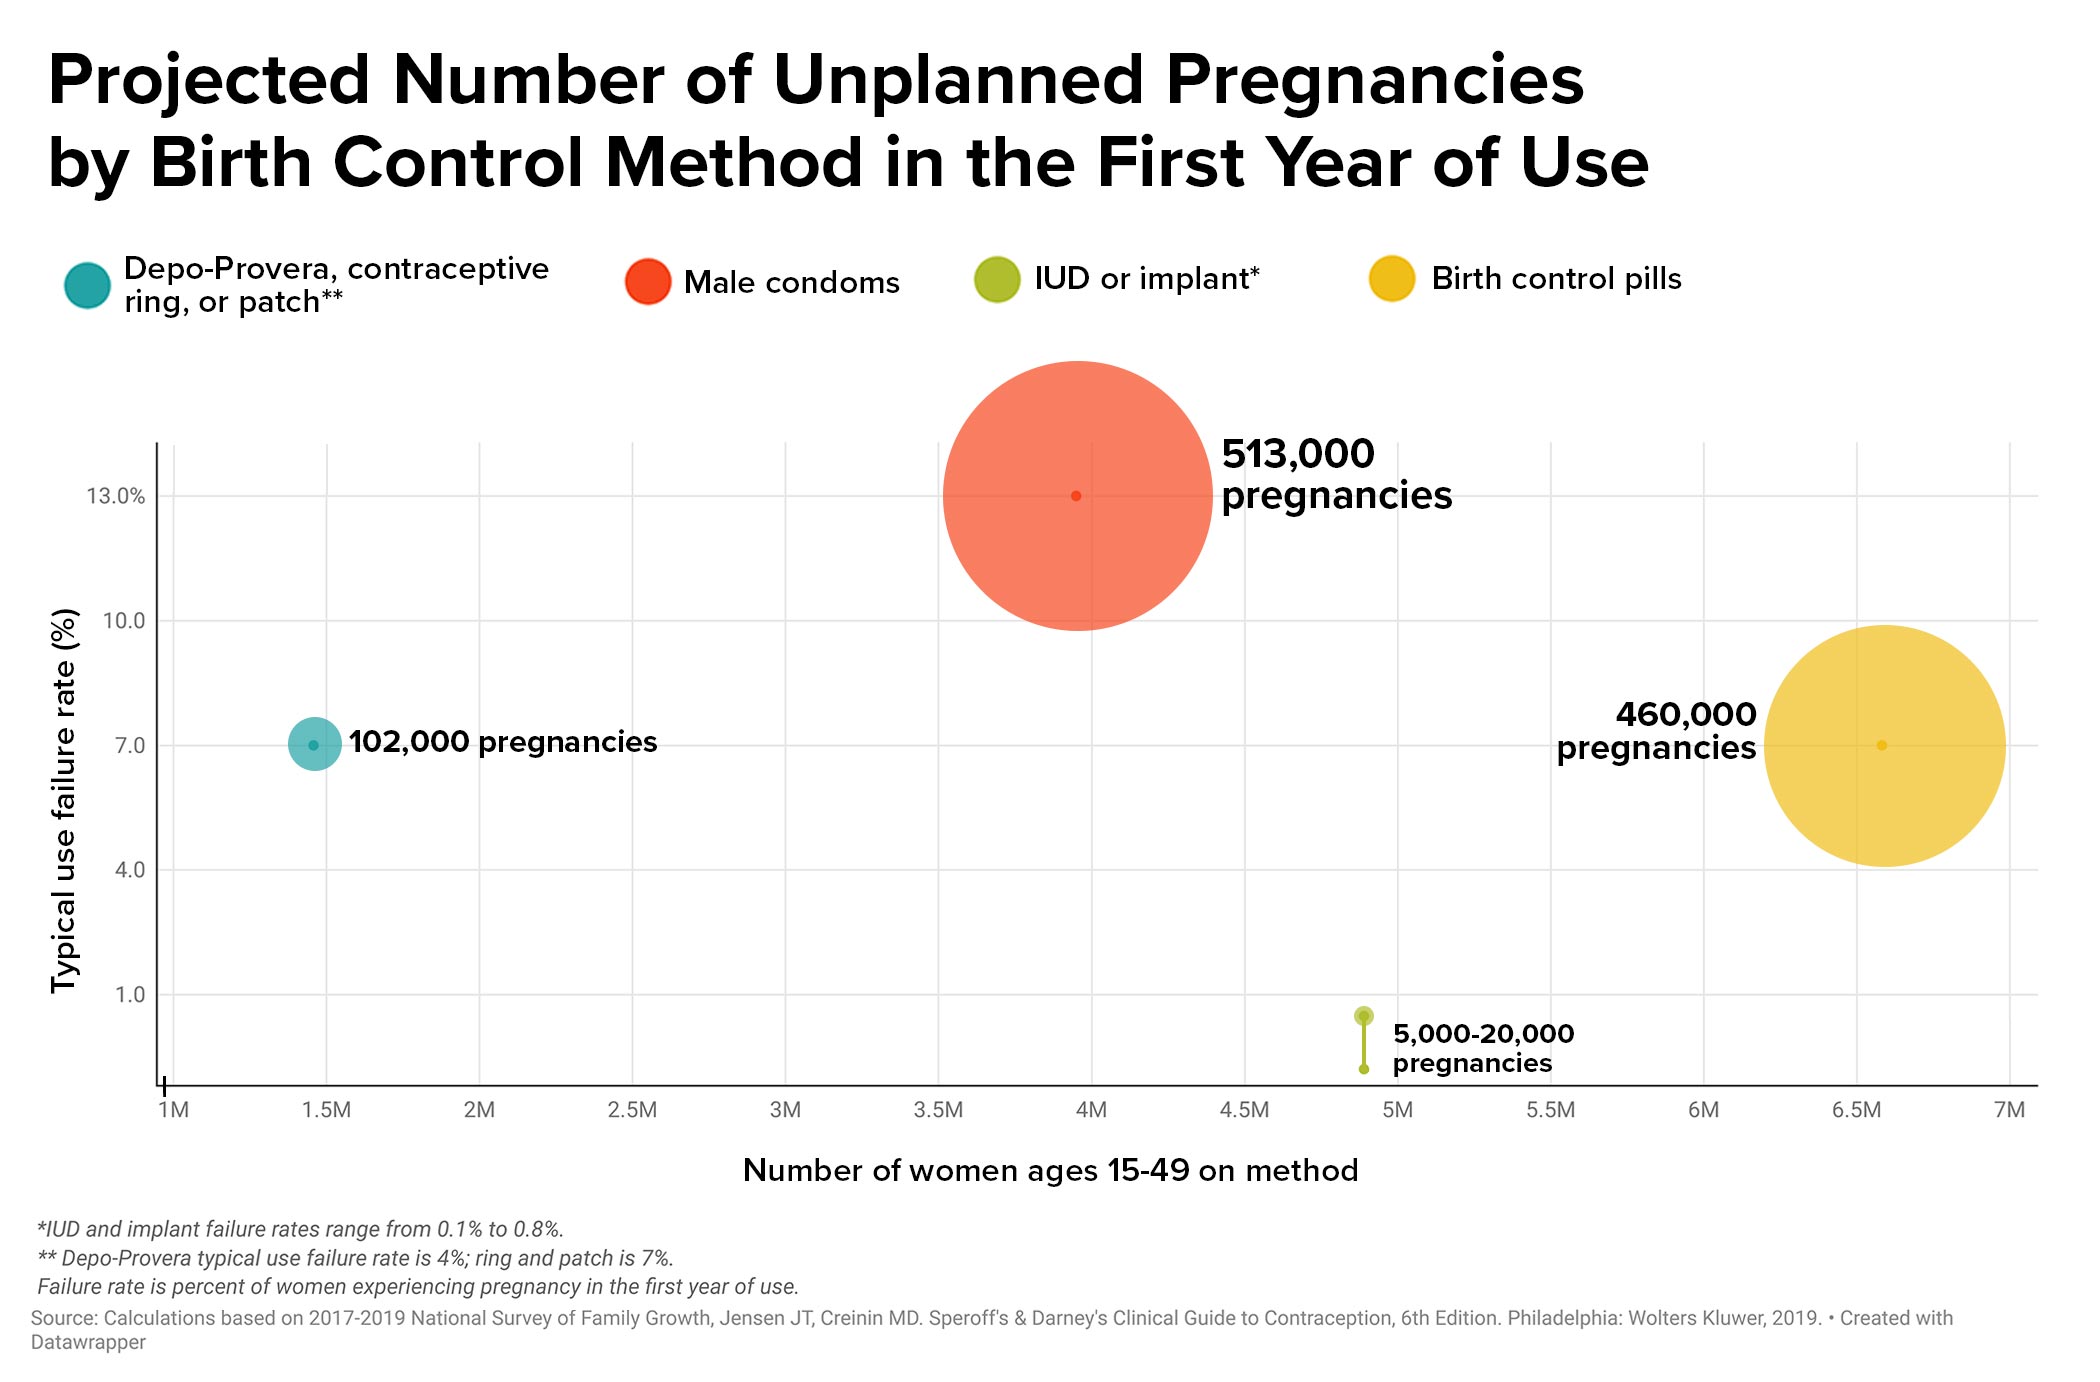 Bir grafik başlıklı, "İlk Kullanım Yılında Doğum Kontrol Yöntemi ile Öngörülen Planlanmamış Gebelik Sayısı." Dört doğum kontrol yöntemi için noktaları, beklenmeyen gebeliklerin meydana gelebileceği orantısına göre boyutlandırılmış noktalarla görüntüler.  En büyük nokta, 513.000 beklenen gebelikle erkek prezervatiflerini temsil ediyor.  İkinci en büyük 460.000 gebelikle doğum kontrol haplarını temsil ediyor.  Üçüncü en büyük, 102.000 gebelikle Depo-Provera, kontraseptif halka veya yama kullanıcılarını temsil ediyor.  En küçük nokta, 5.000 ila 20.000 hamilelik ile RİA veya implantları temsil eder.